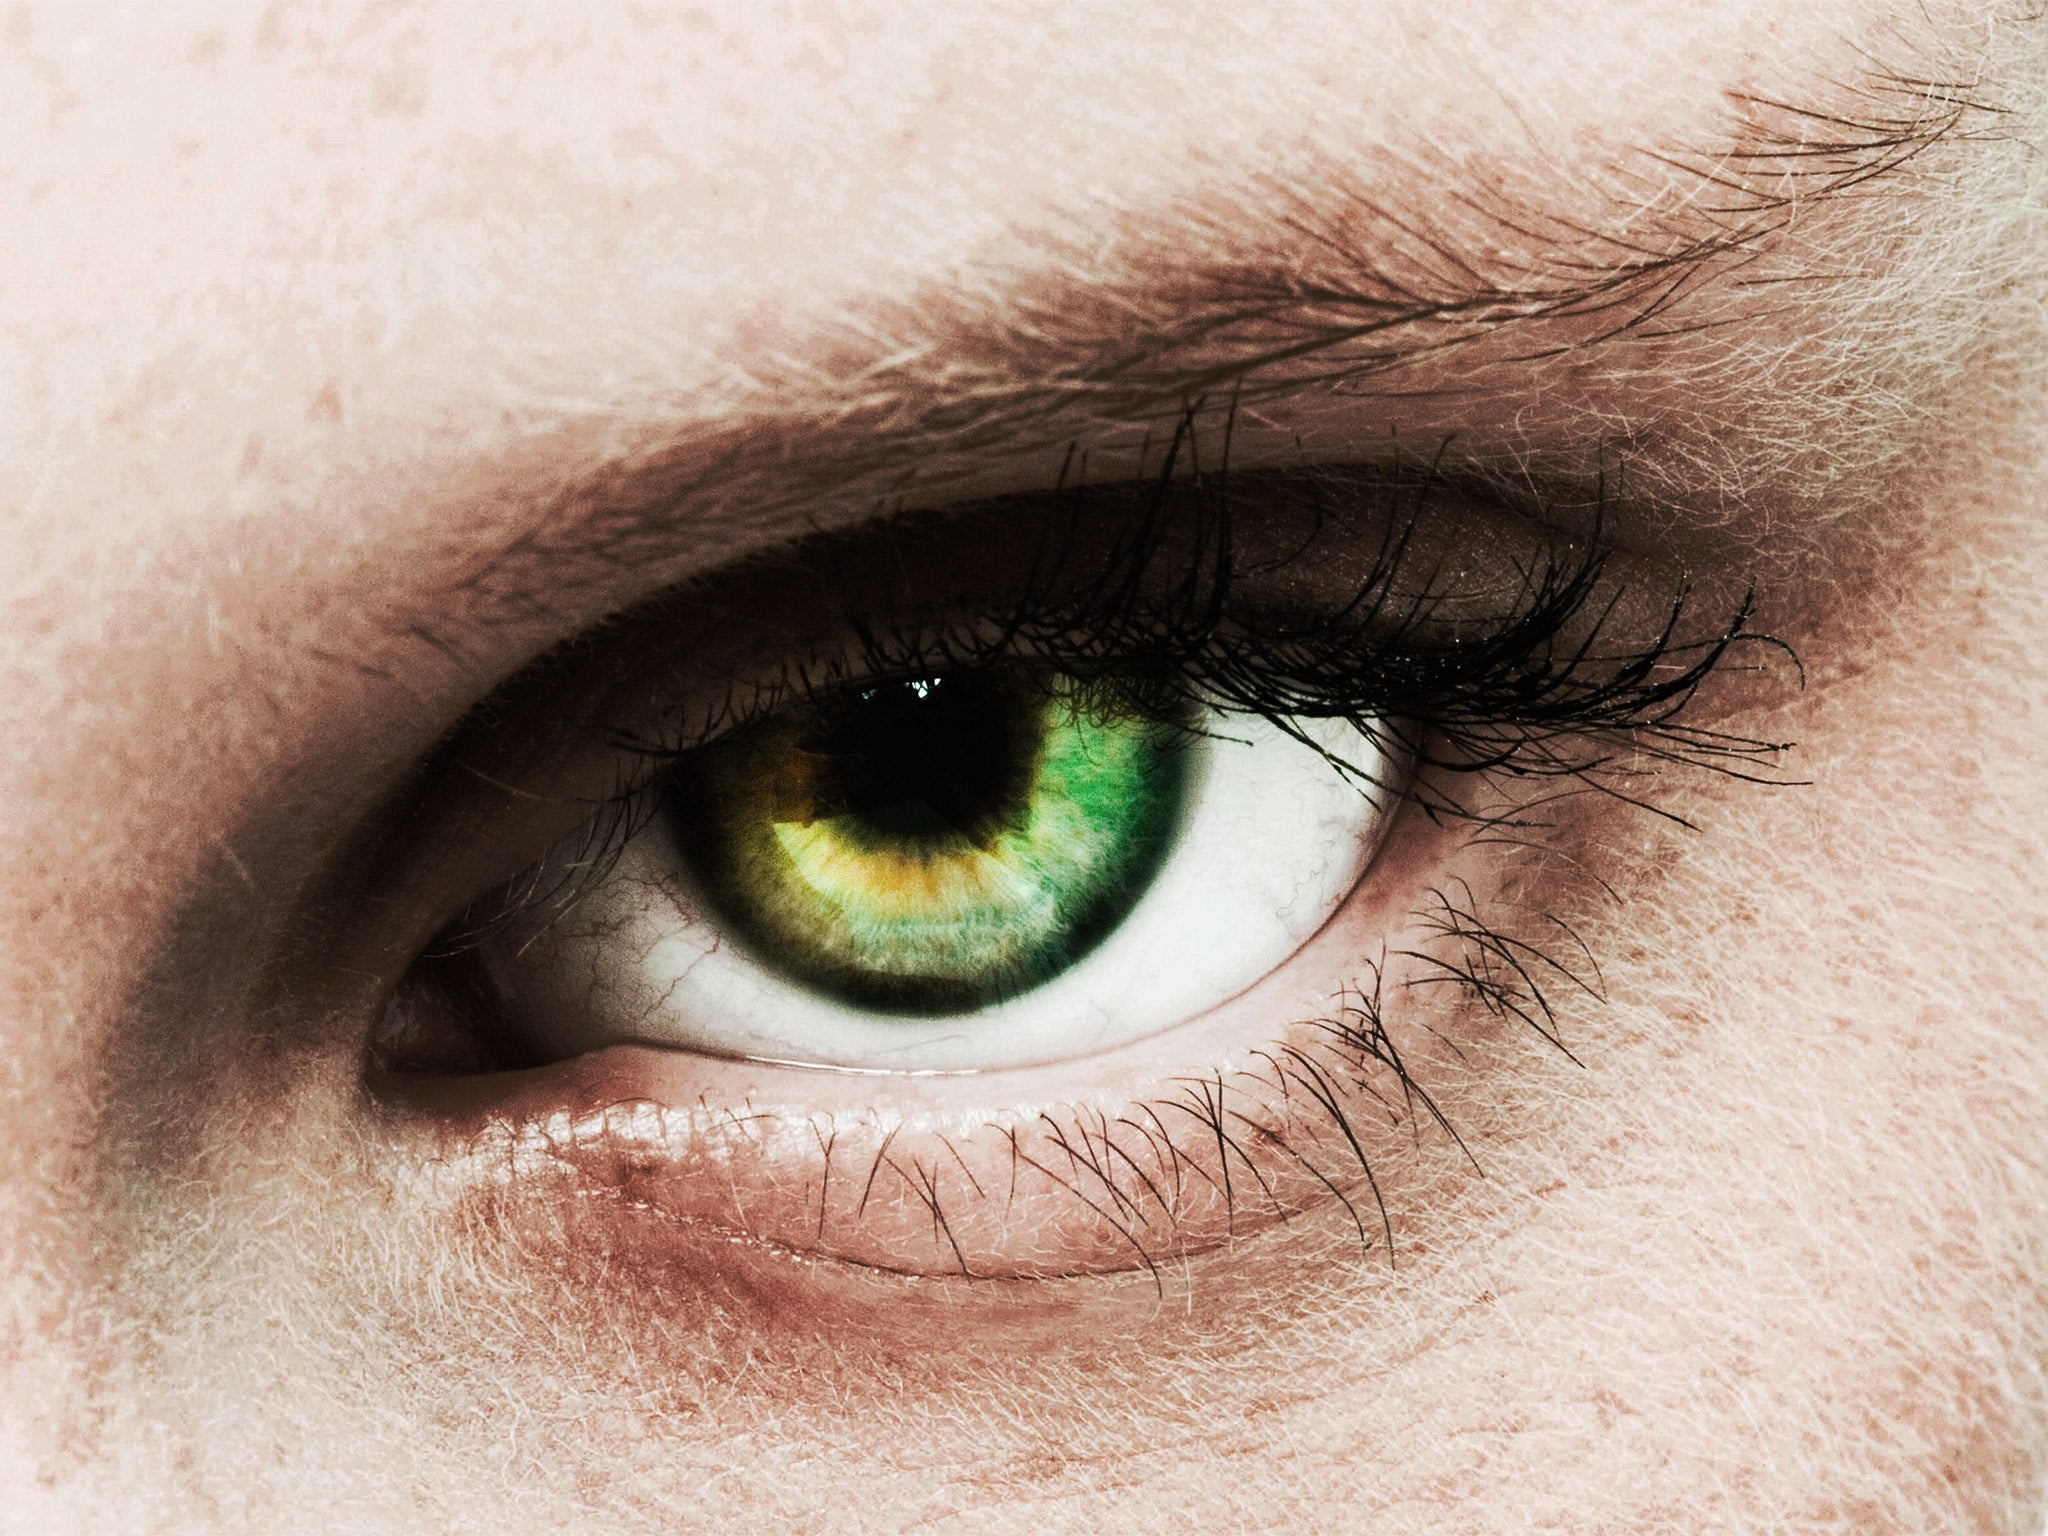 He got green eyes. Зеленый цвет глаз. Светло зеленый цвет глаз. Зеленый цвет глаз редкий.